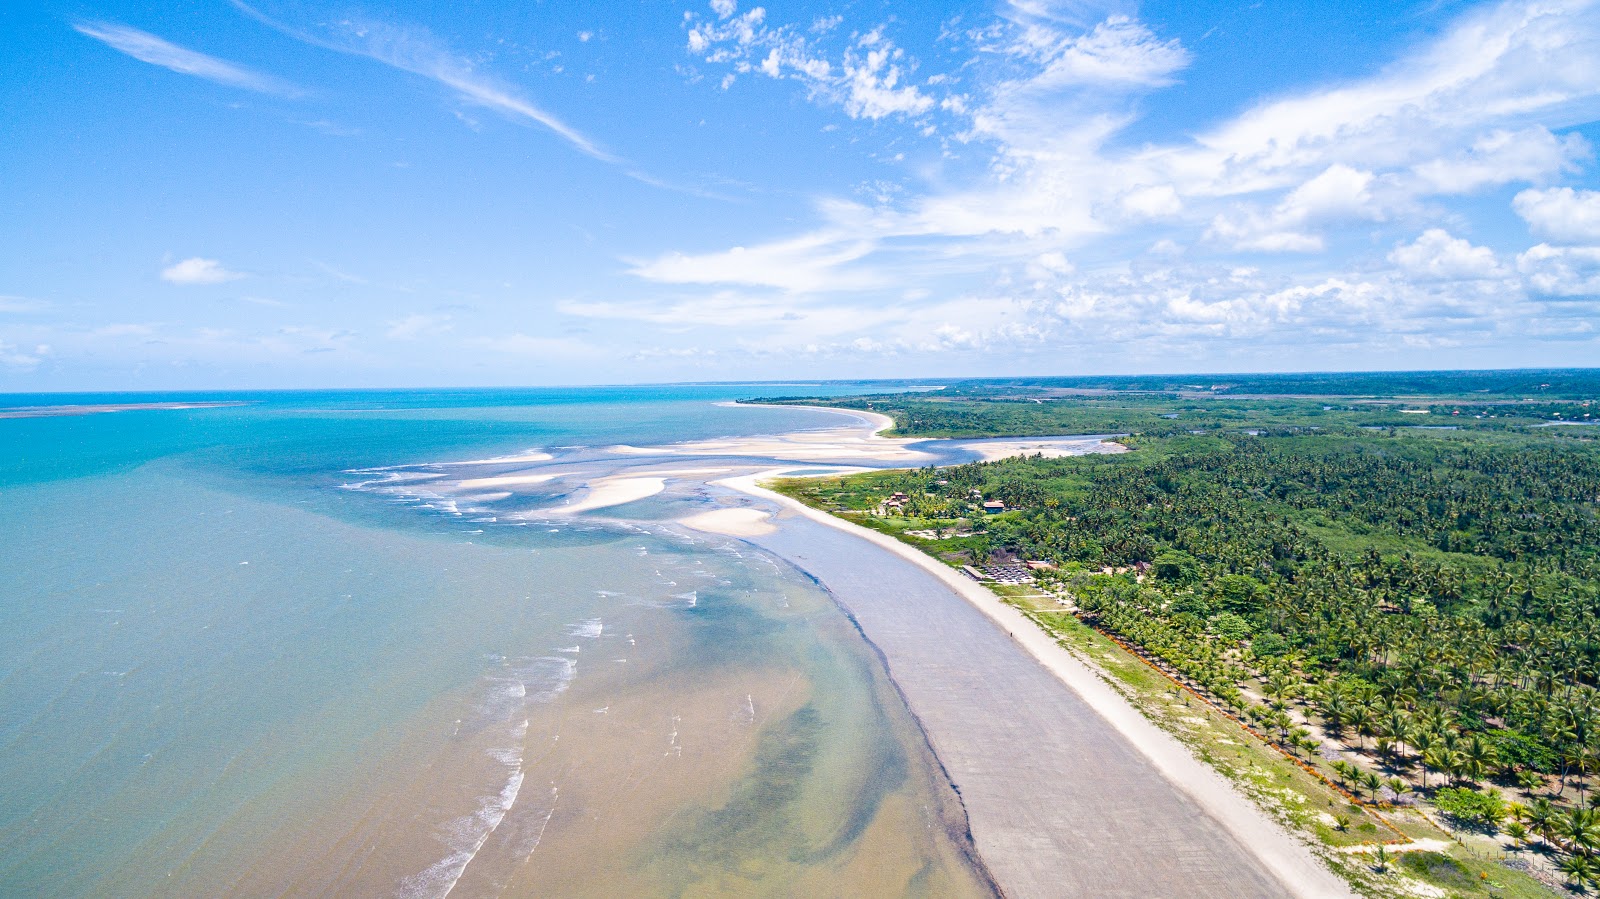 Photo of Santo Antônio - Santa Cruz Cabrália Beach with turquoise water surface